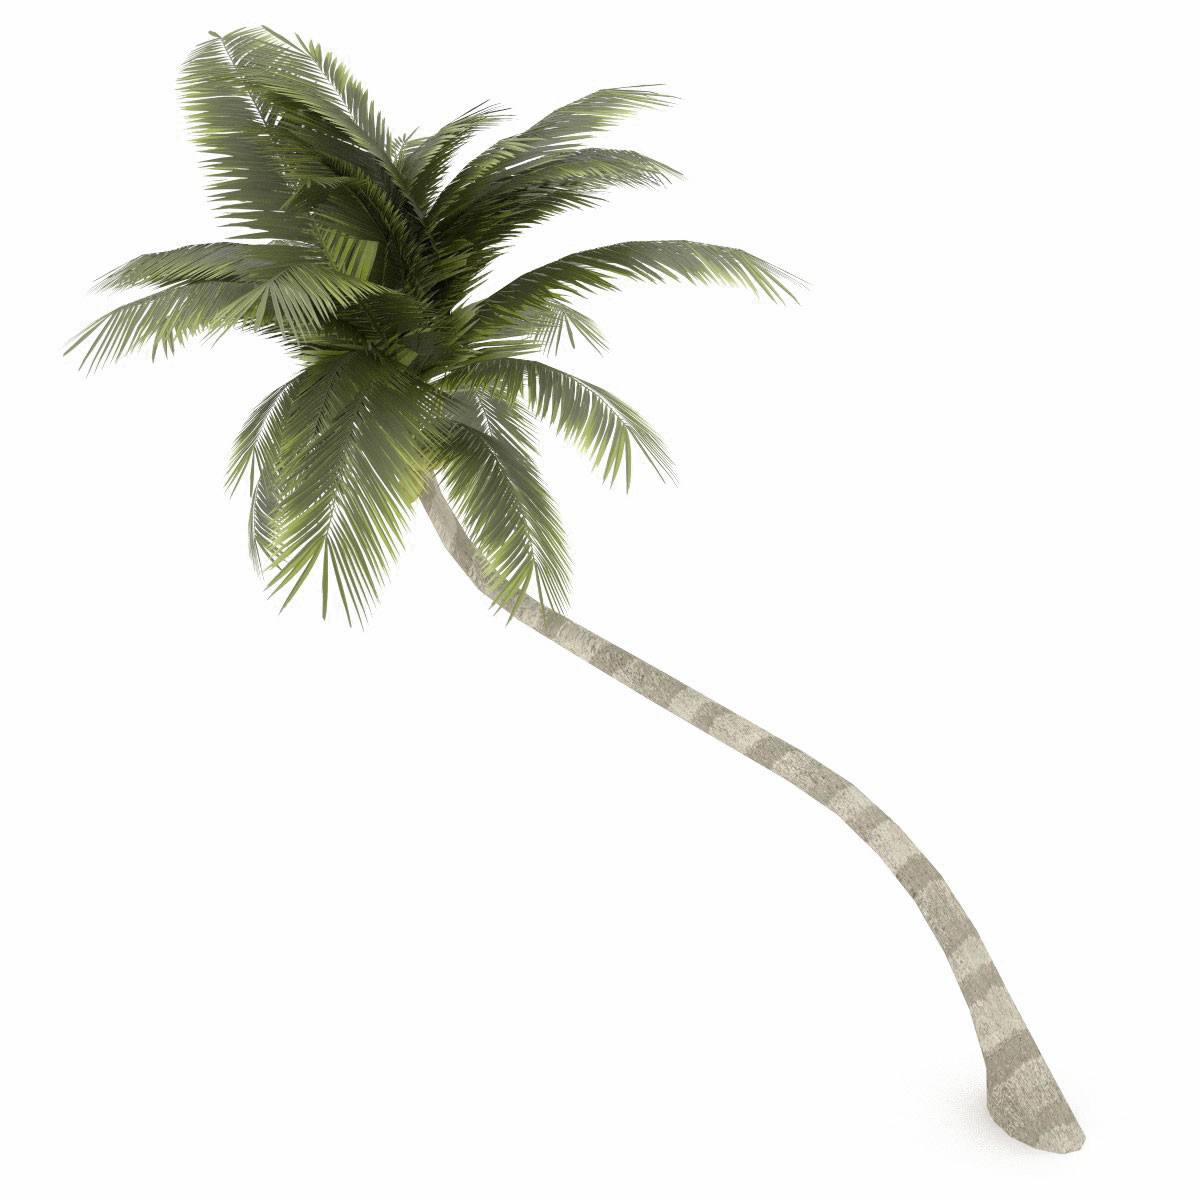 Imagen Transparente PNG de árbol de coco